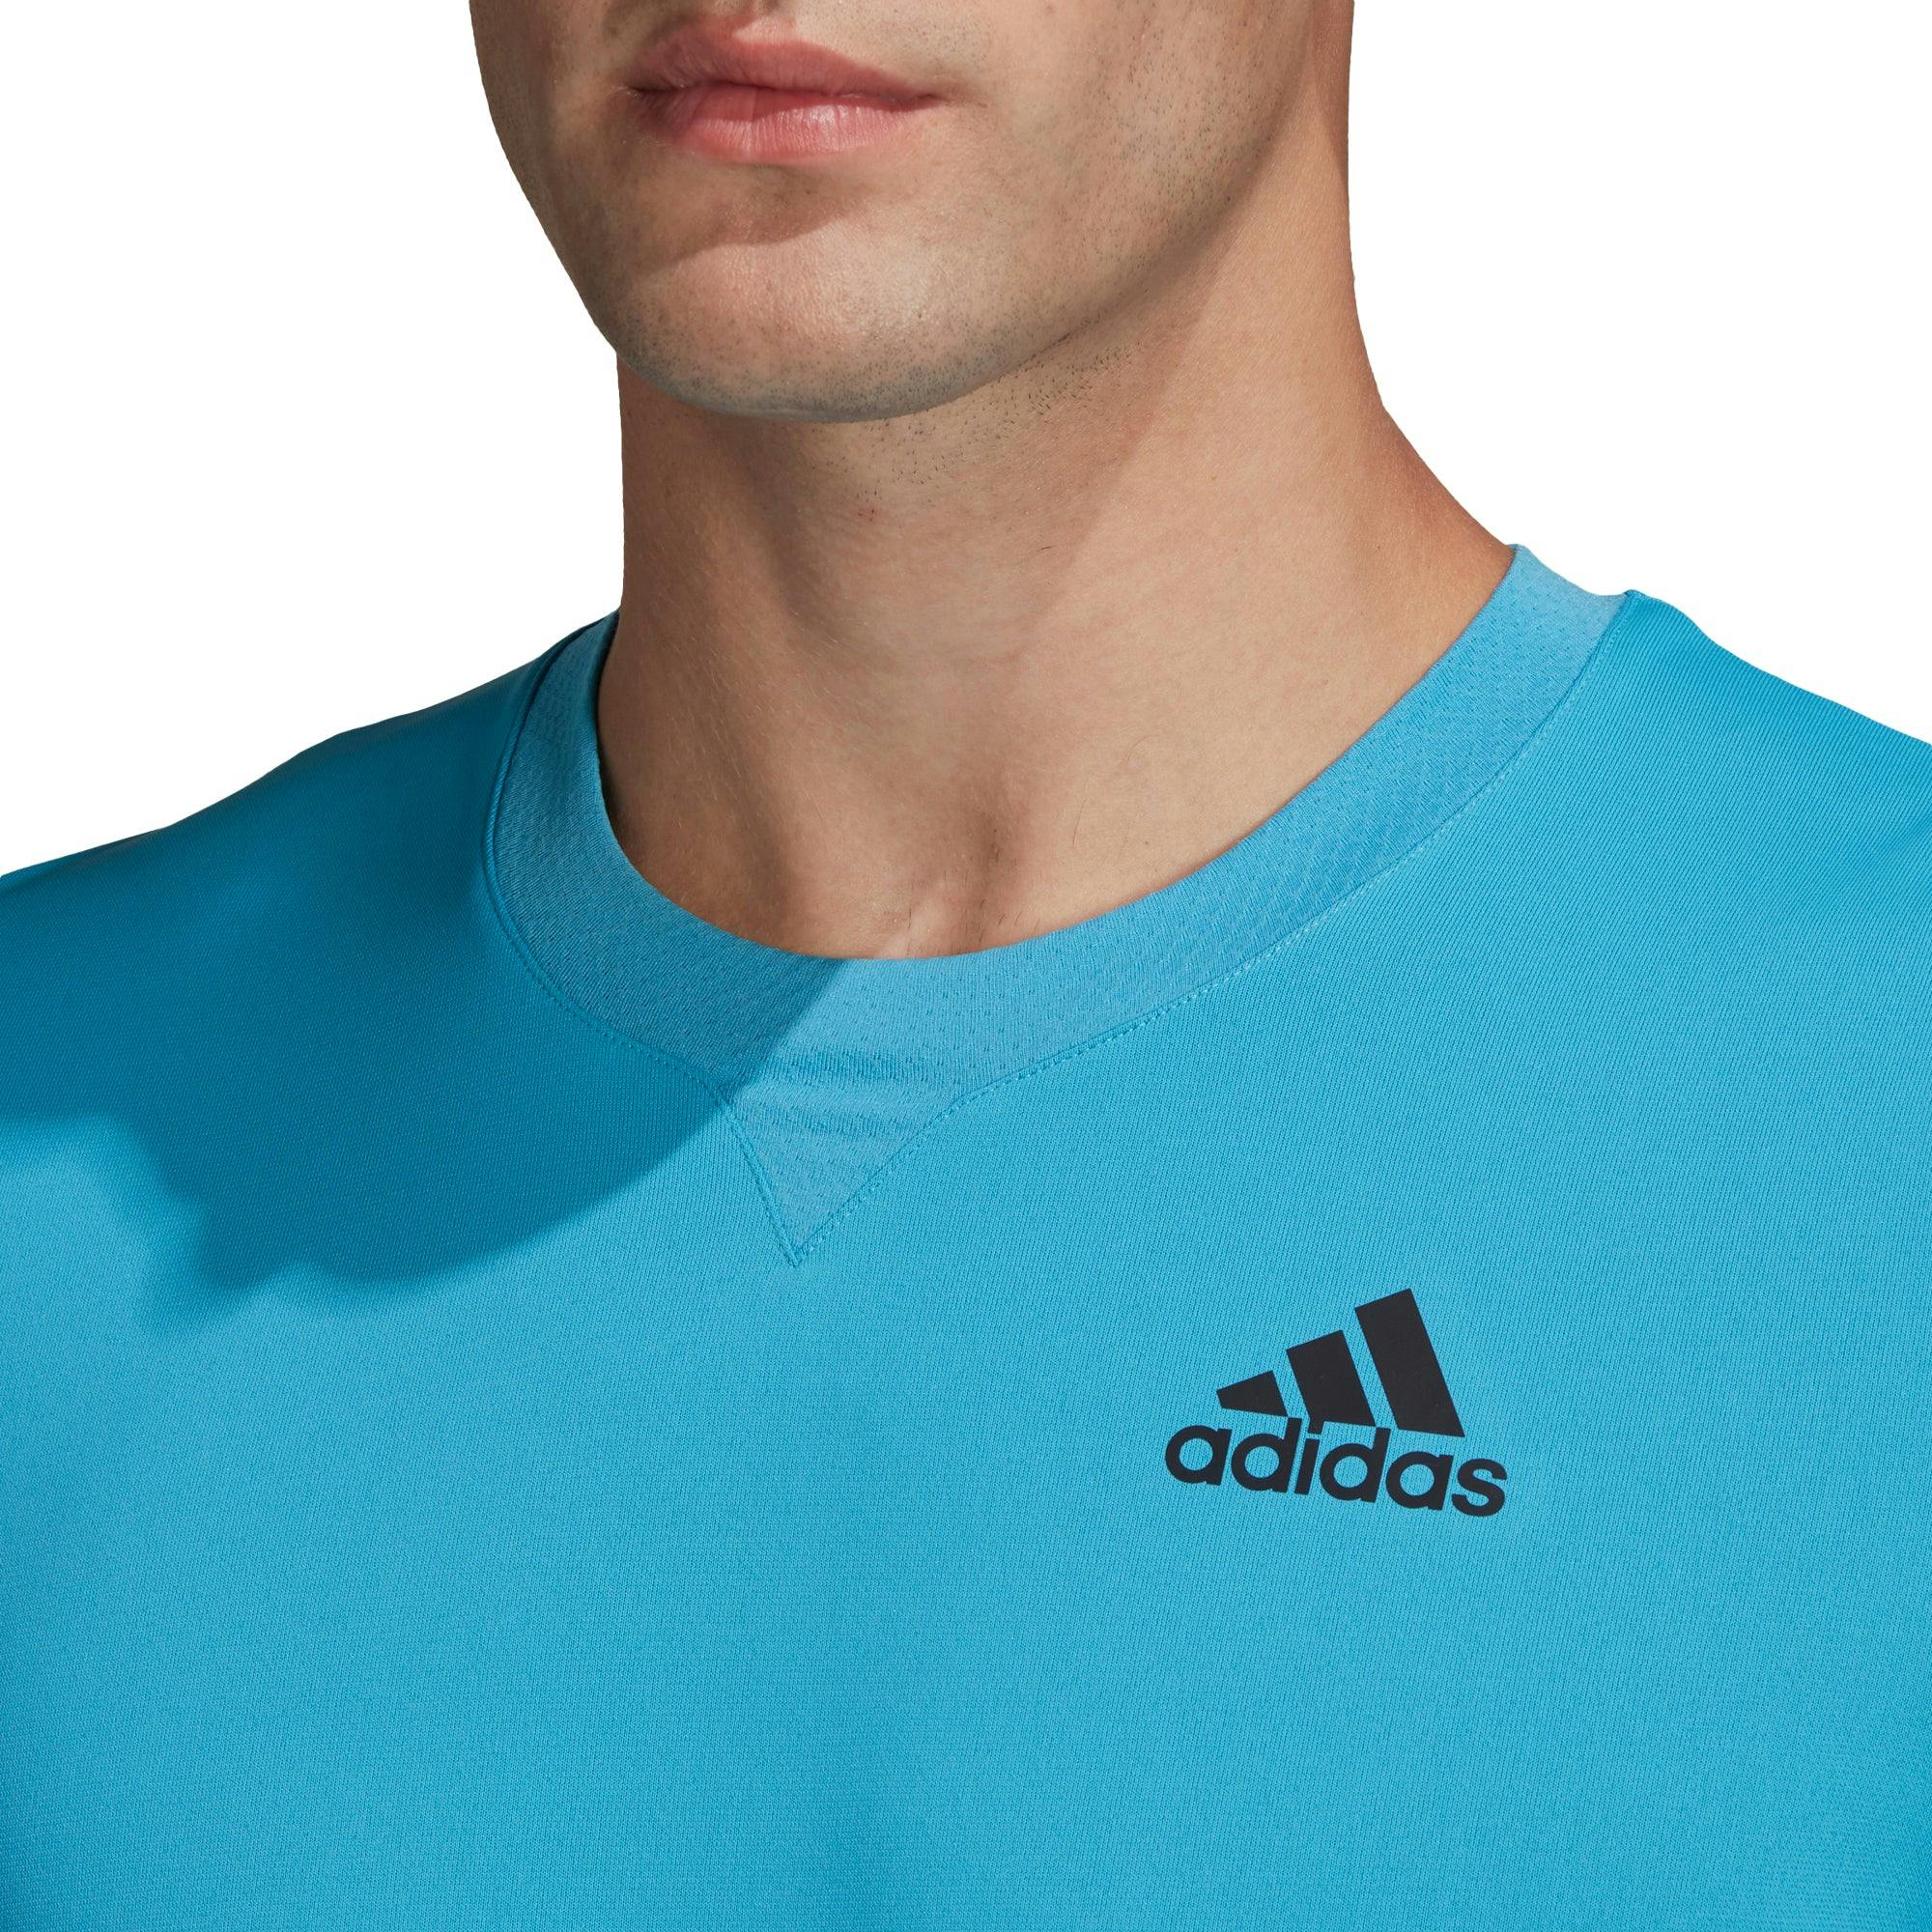 Adidas Men's HEAT.RDY Tennis T-Shirt